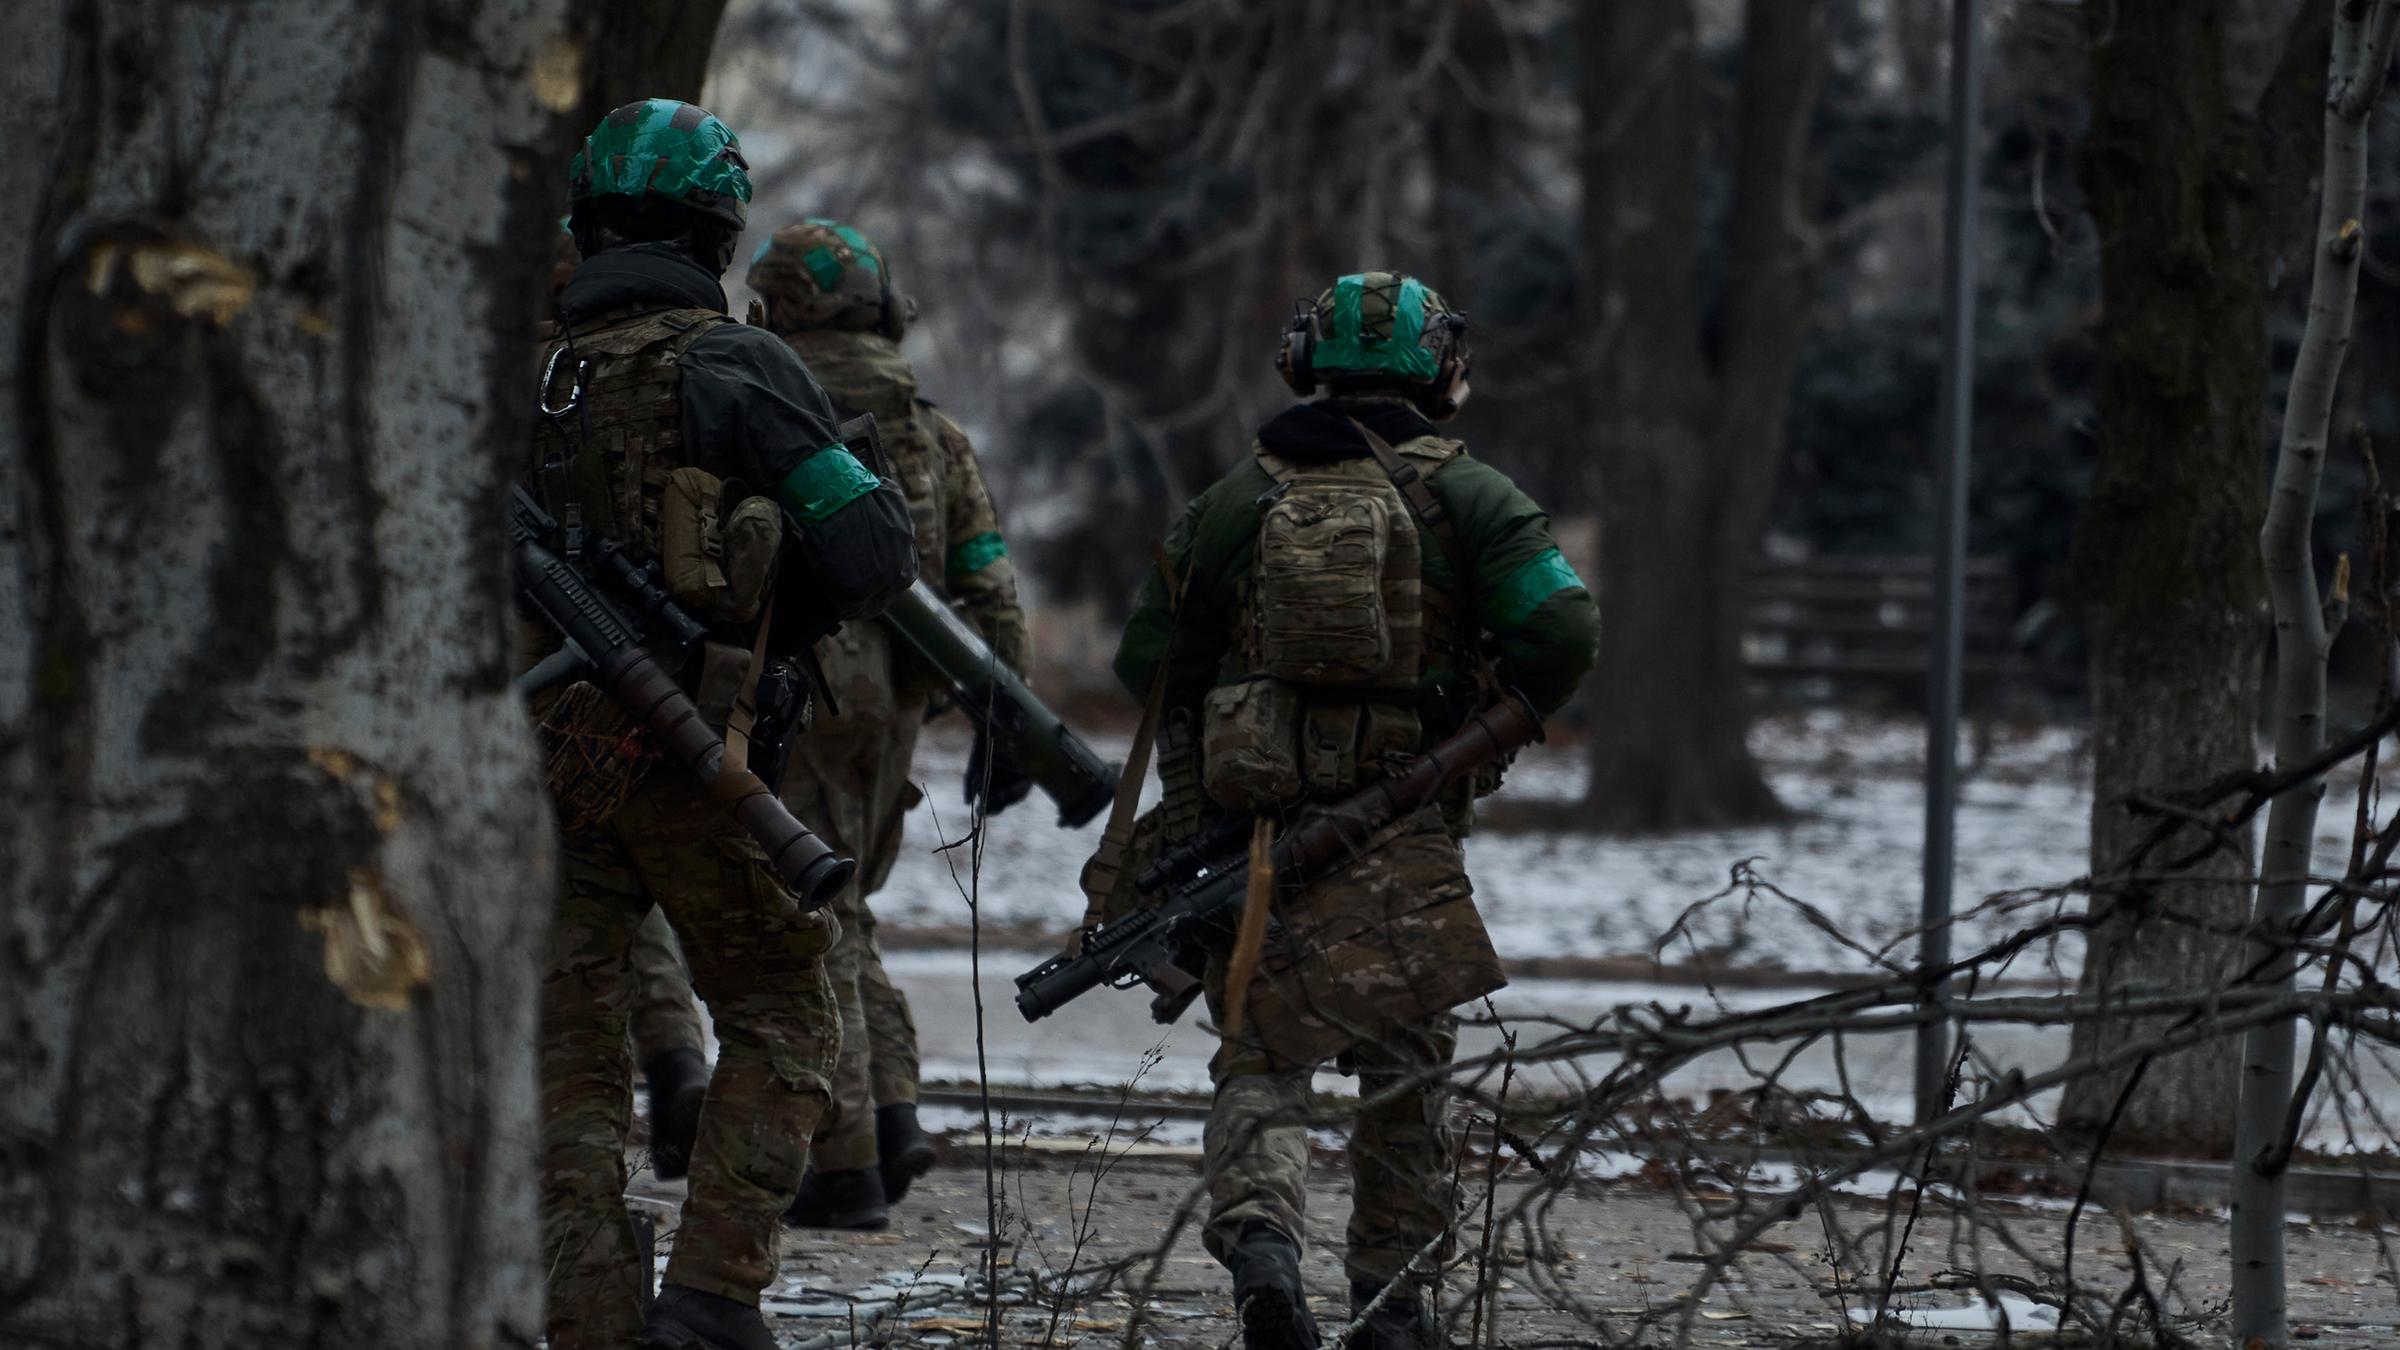 Ουκρανία, Bakhmut: Ουκρανοί στρατιώτες περιπολούν στο Bakhmut.